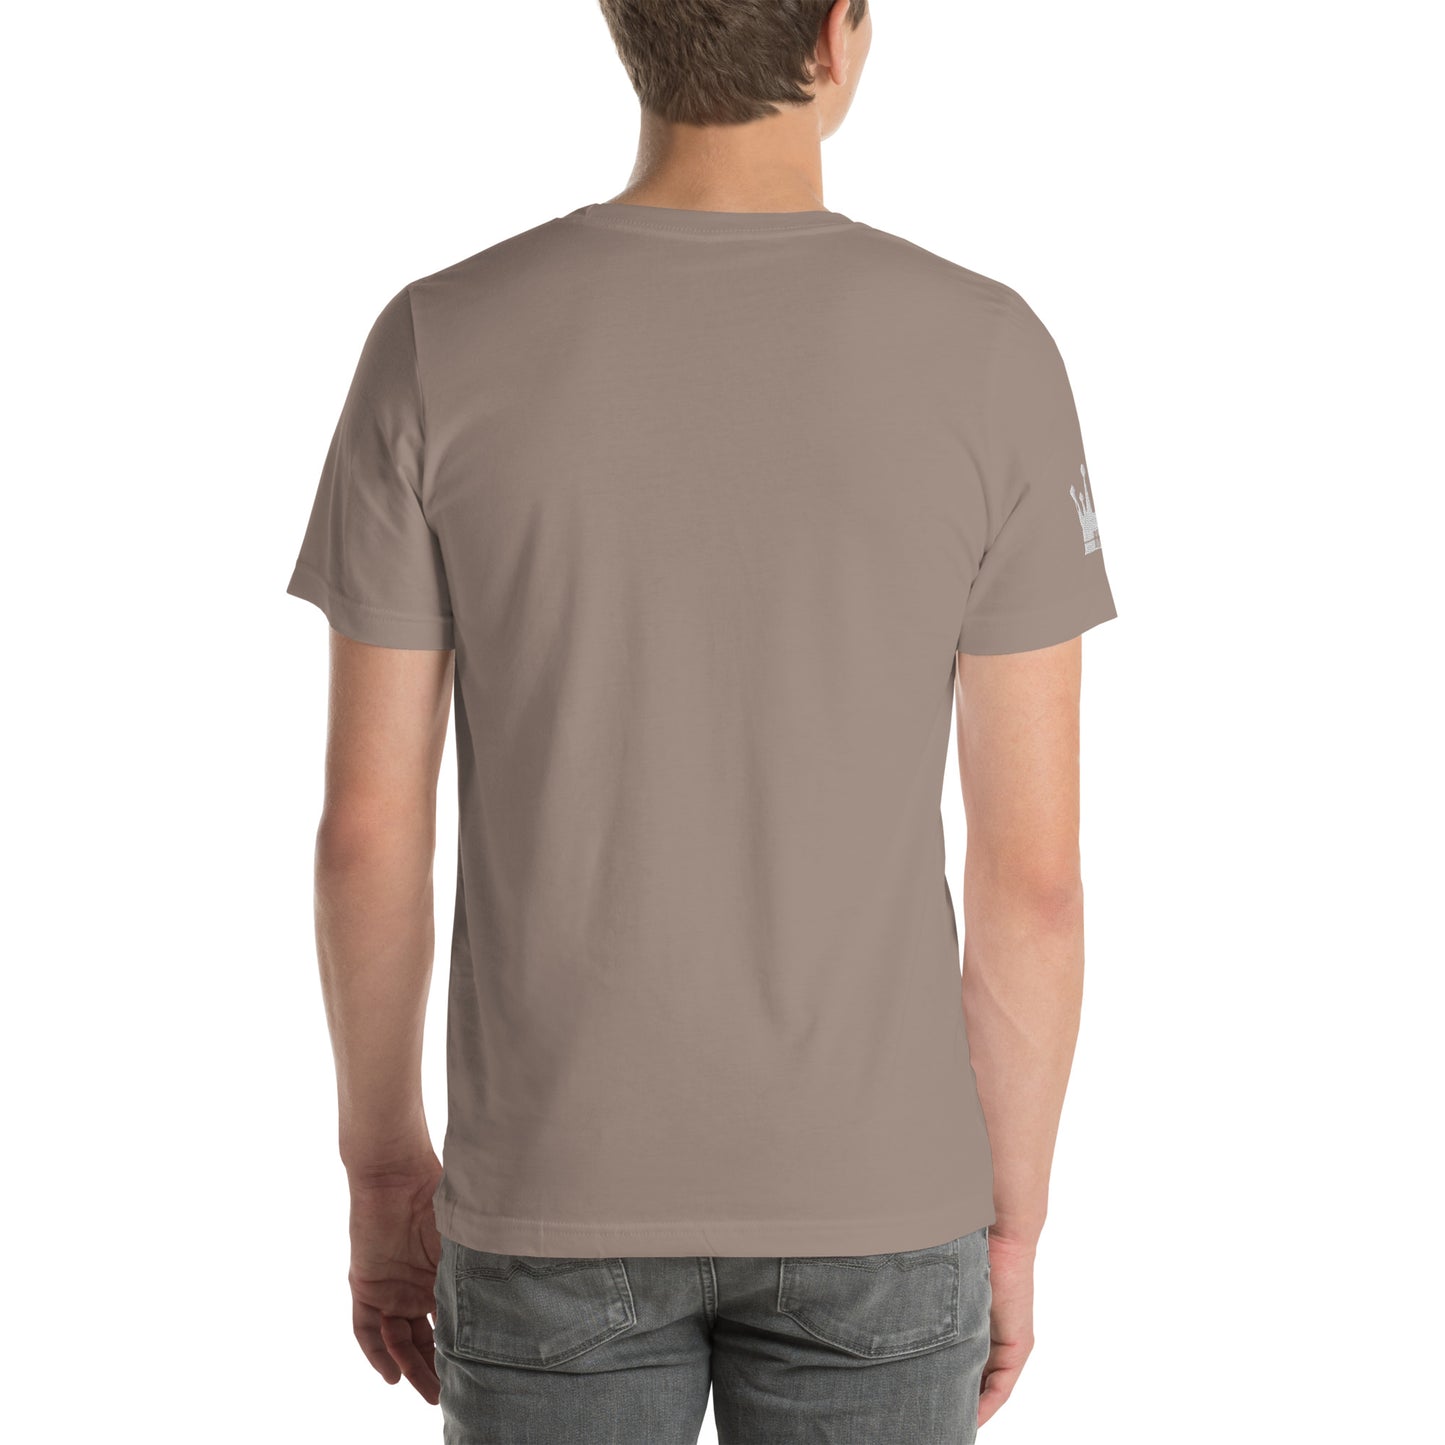 LOVE BETTER "THE STAPLE" Unisex t-shirt